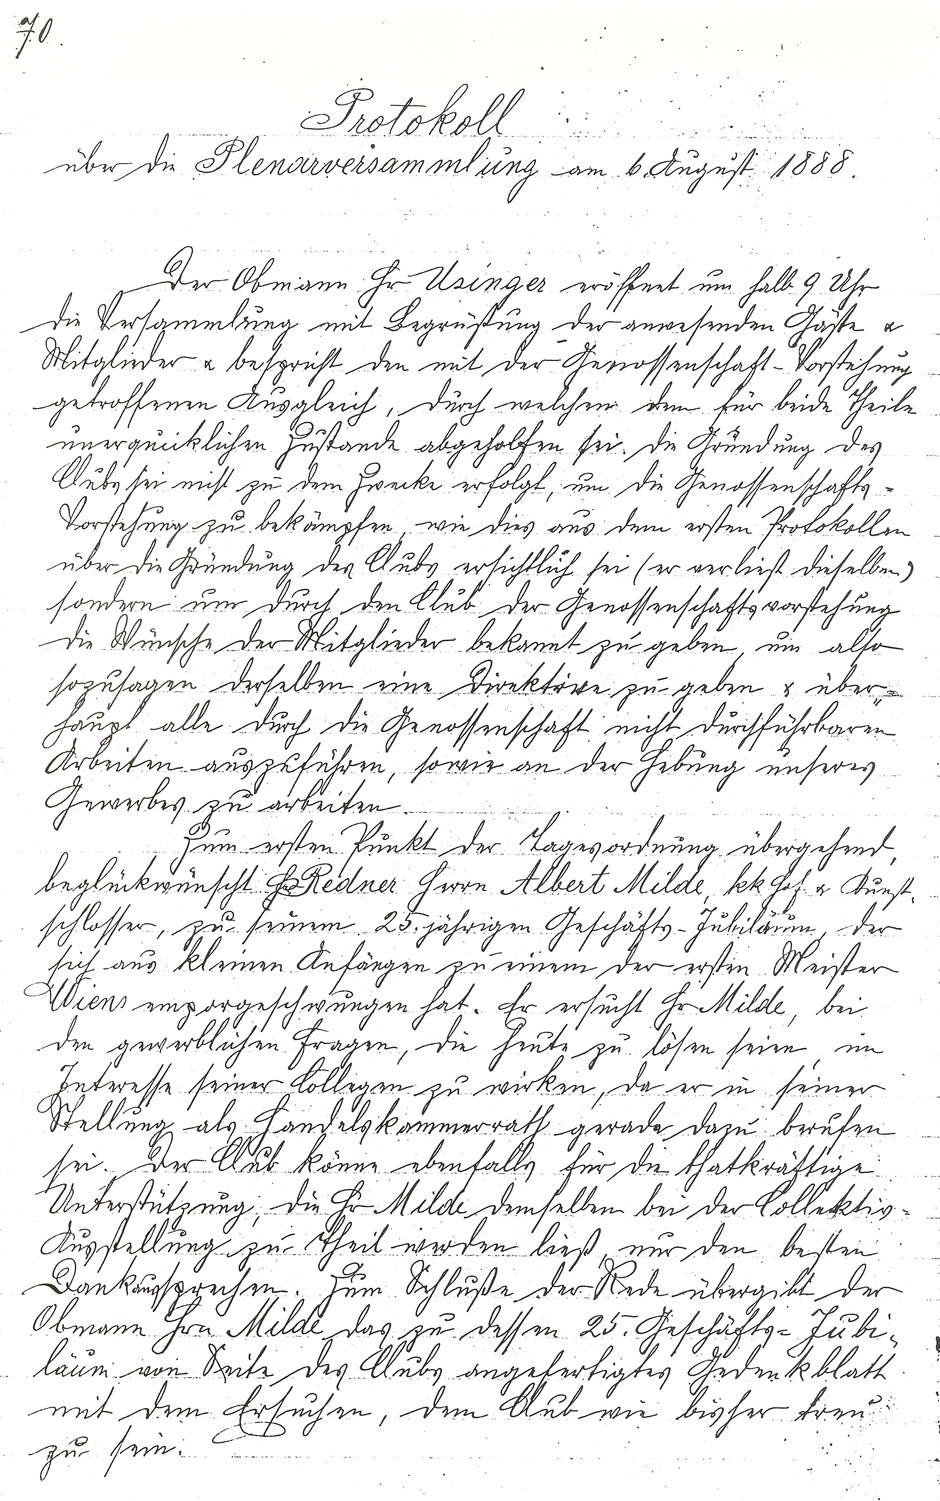 Archivbild: Protokoll über die Plenarversammlung am 6.8.1888 Seite 1